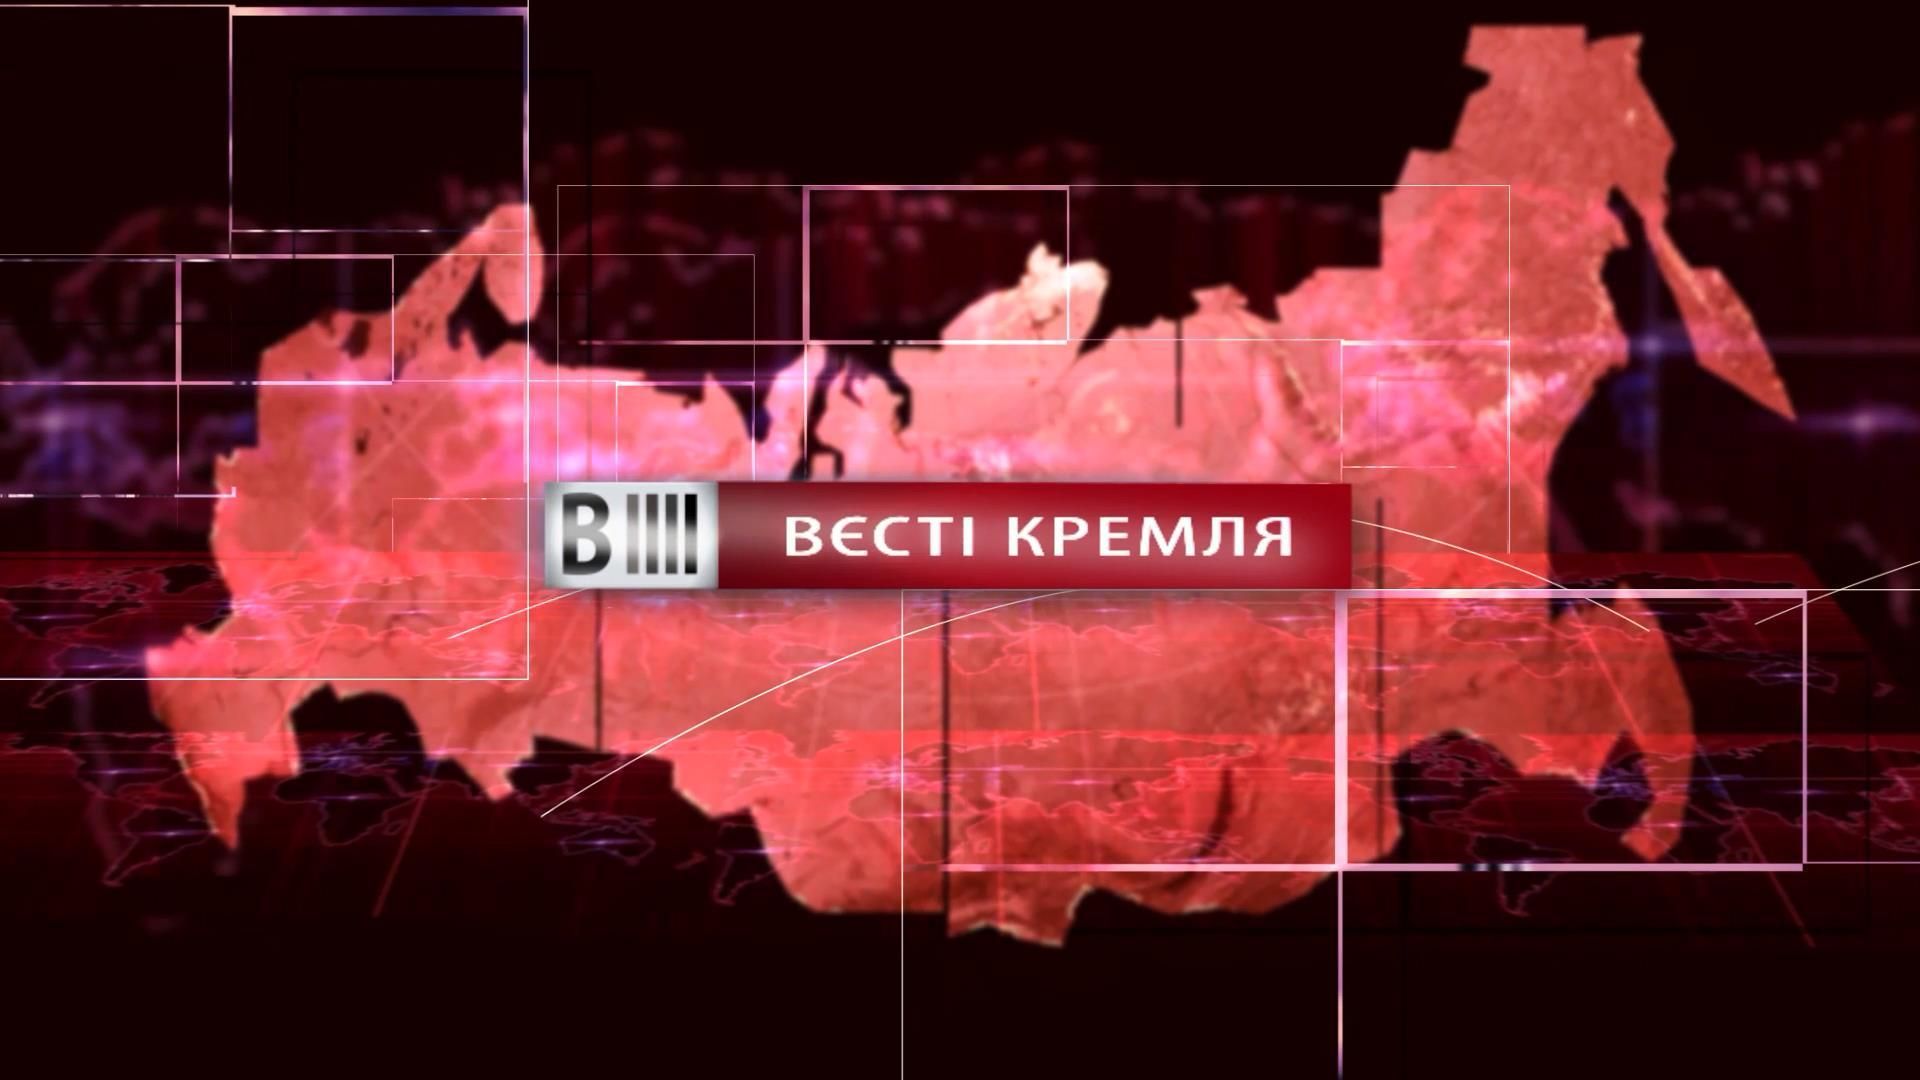 Смотрите "Вести Кремля". Путин опозорился на каждом экране. Народное поздравления от мэра Сочи